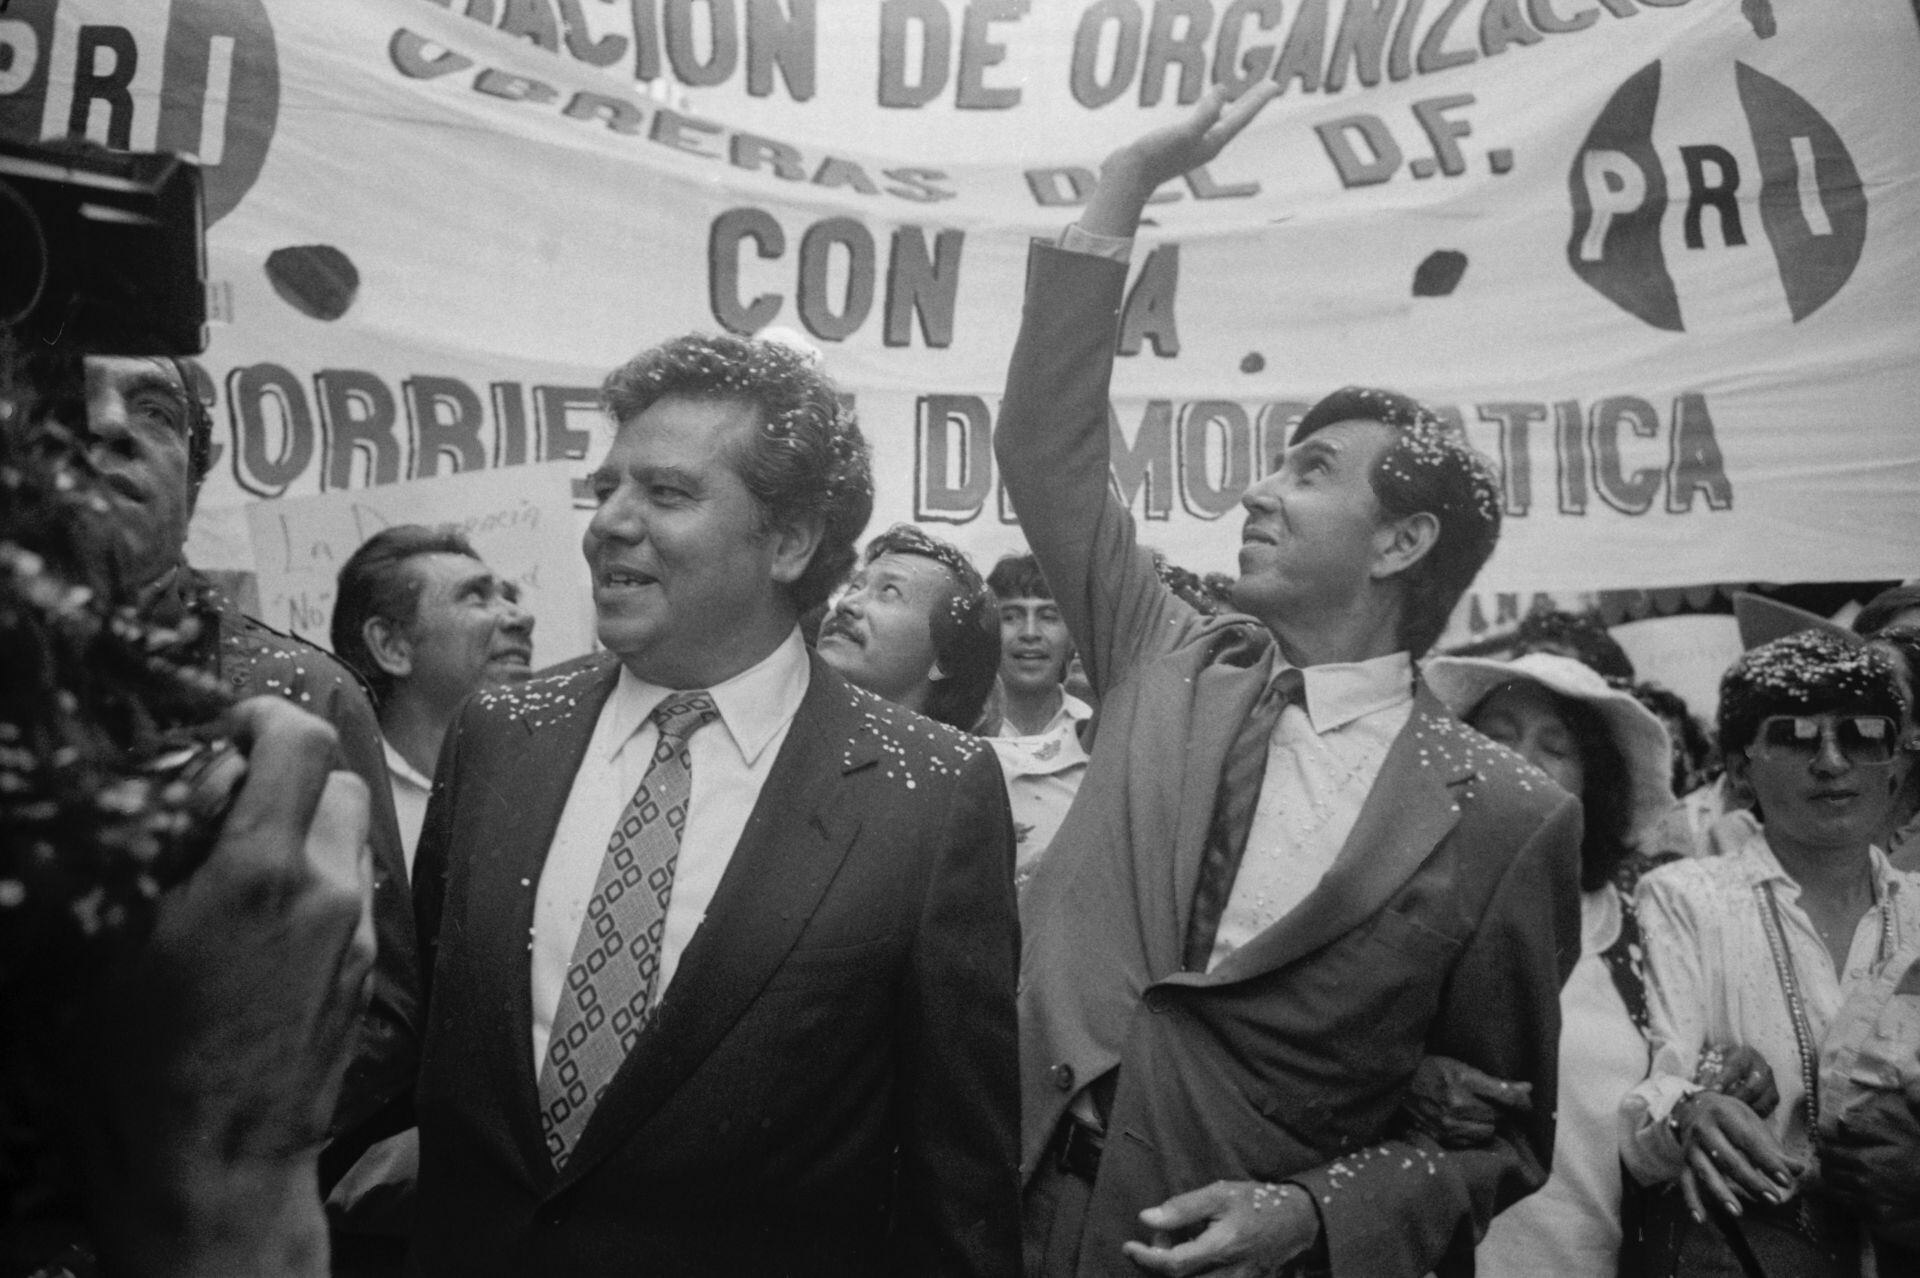 Cuauhtémoc Cárdenas y Porfirio Muñoz Ledo, fundadores del PRD, marchan al Zócalo capitalino druante la 